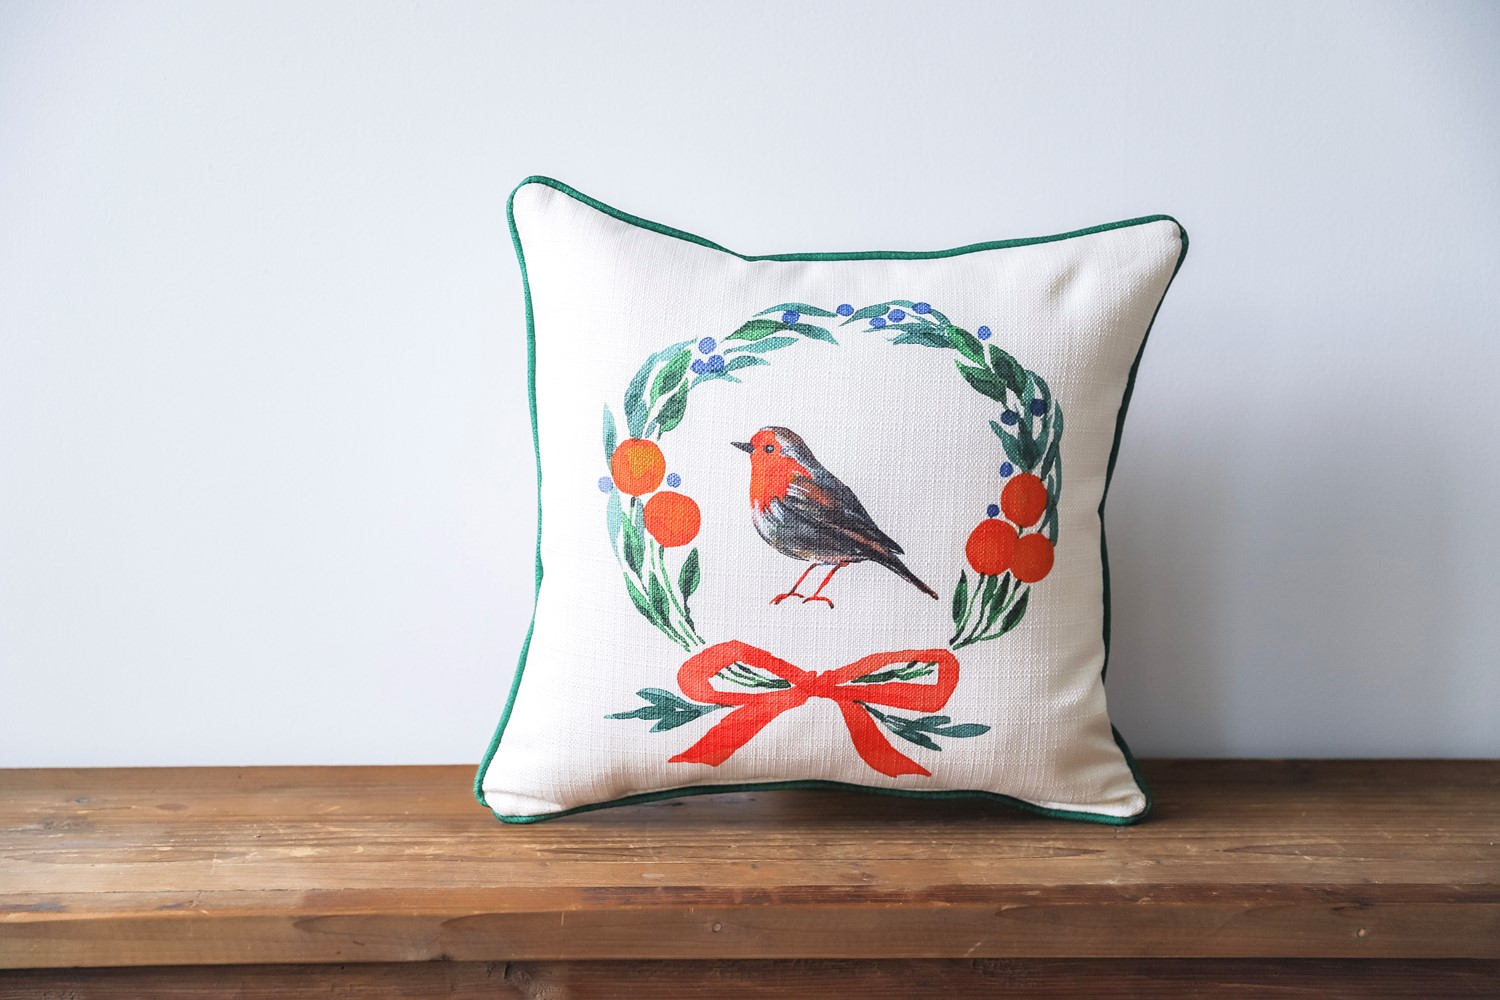 1pc Christmas Wreath & Small Bird Pattern Pillow Case (pillow